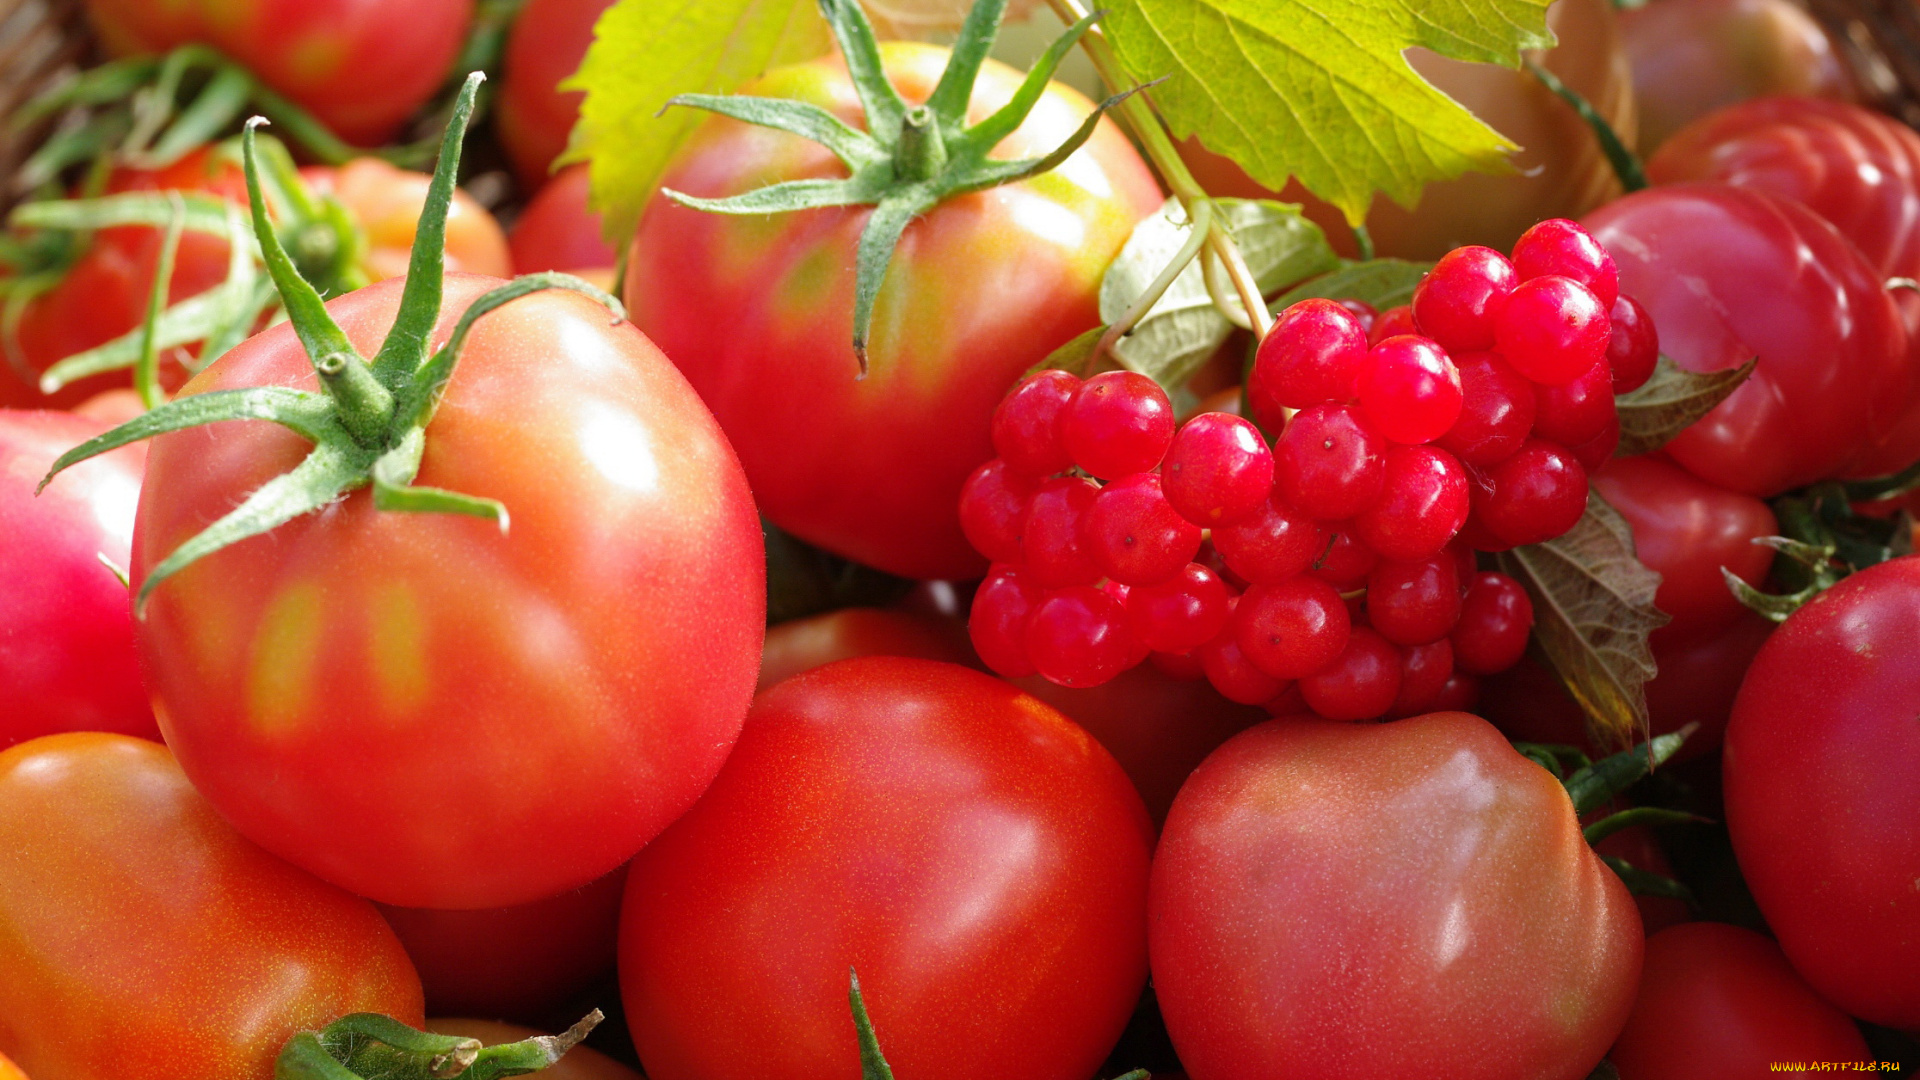 еда, помидоры, урожай, осень, огород, ягоды, дача, красный, цвет, овощи, множество, калина, сентябрь, томат, томаты